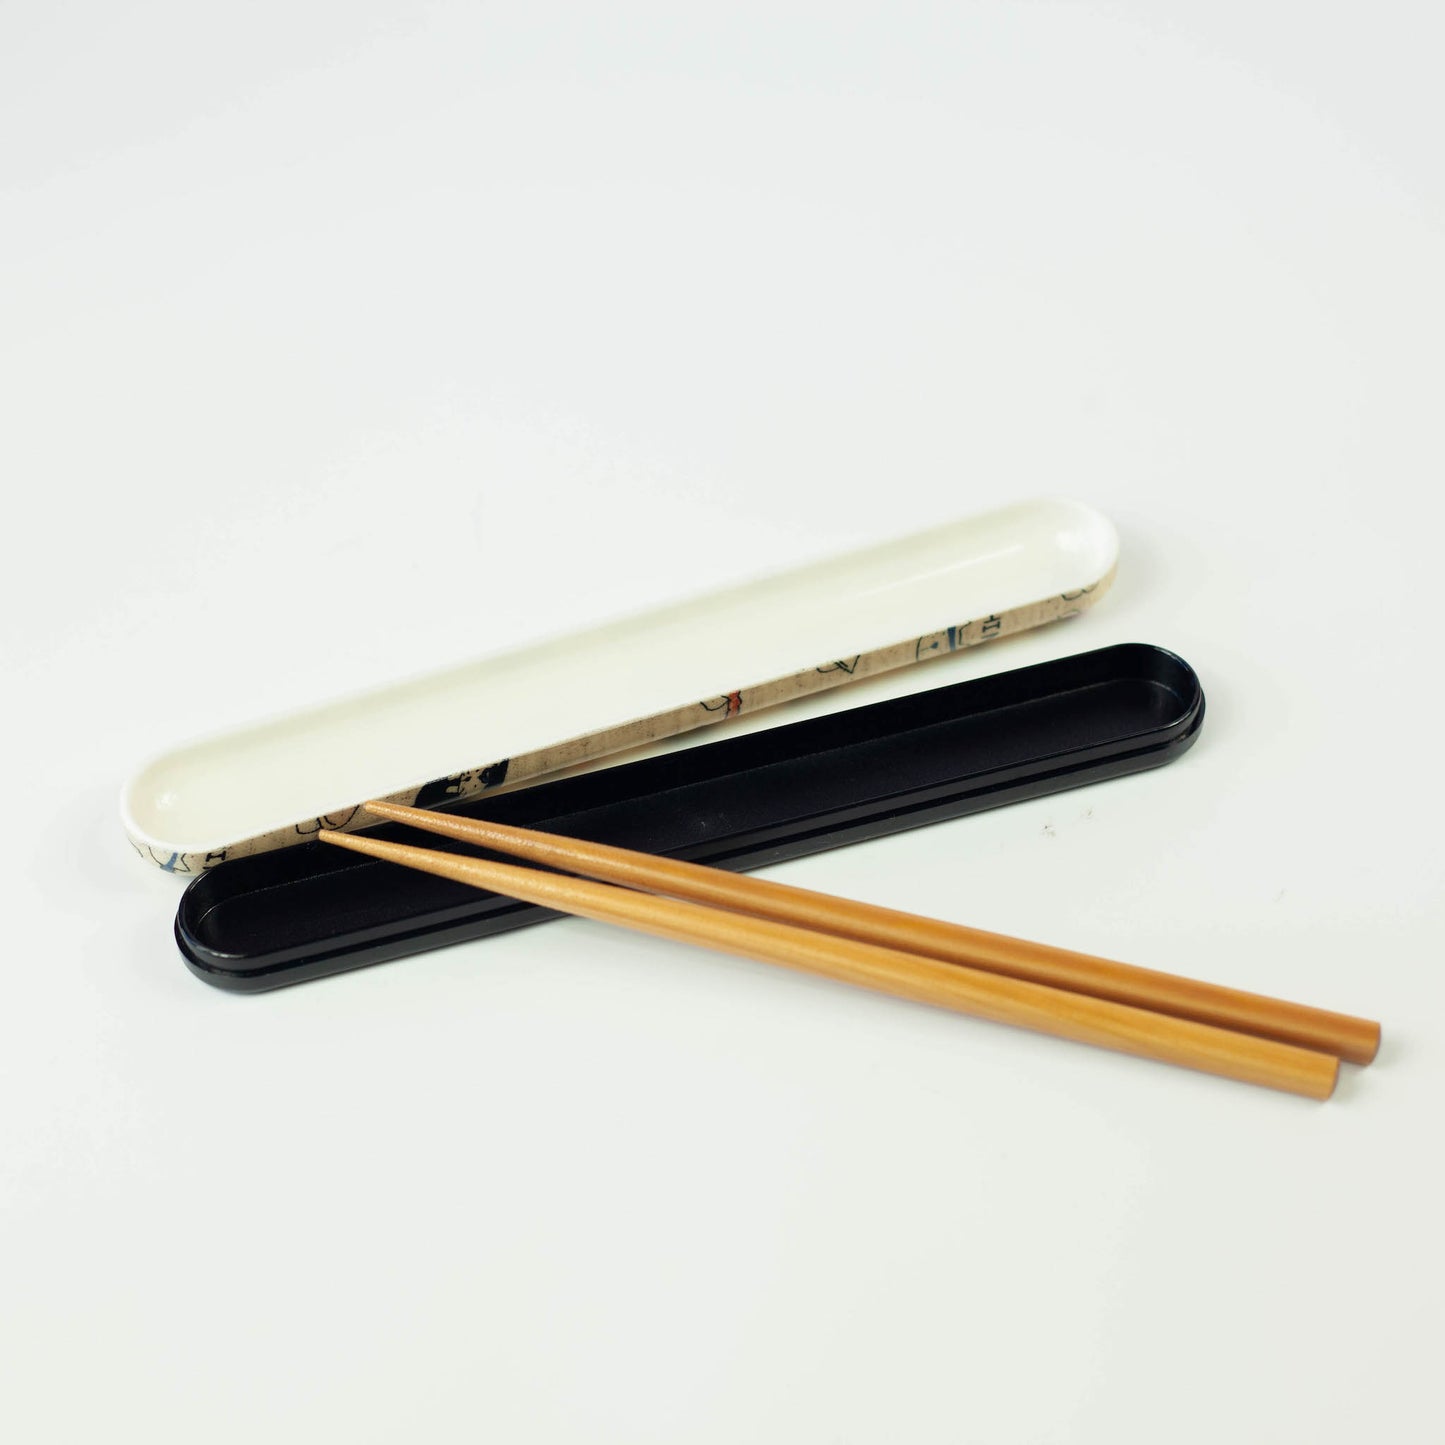 Original Sushi Neko Chopsticks Set